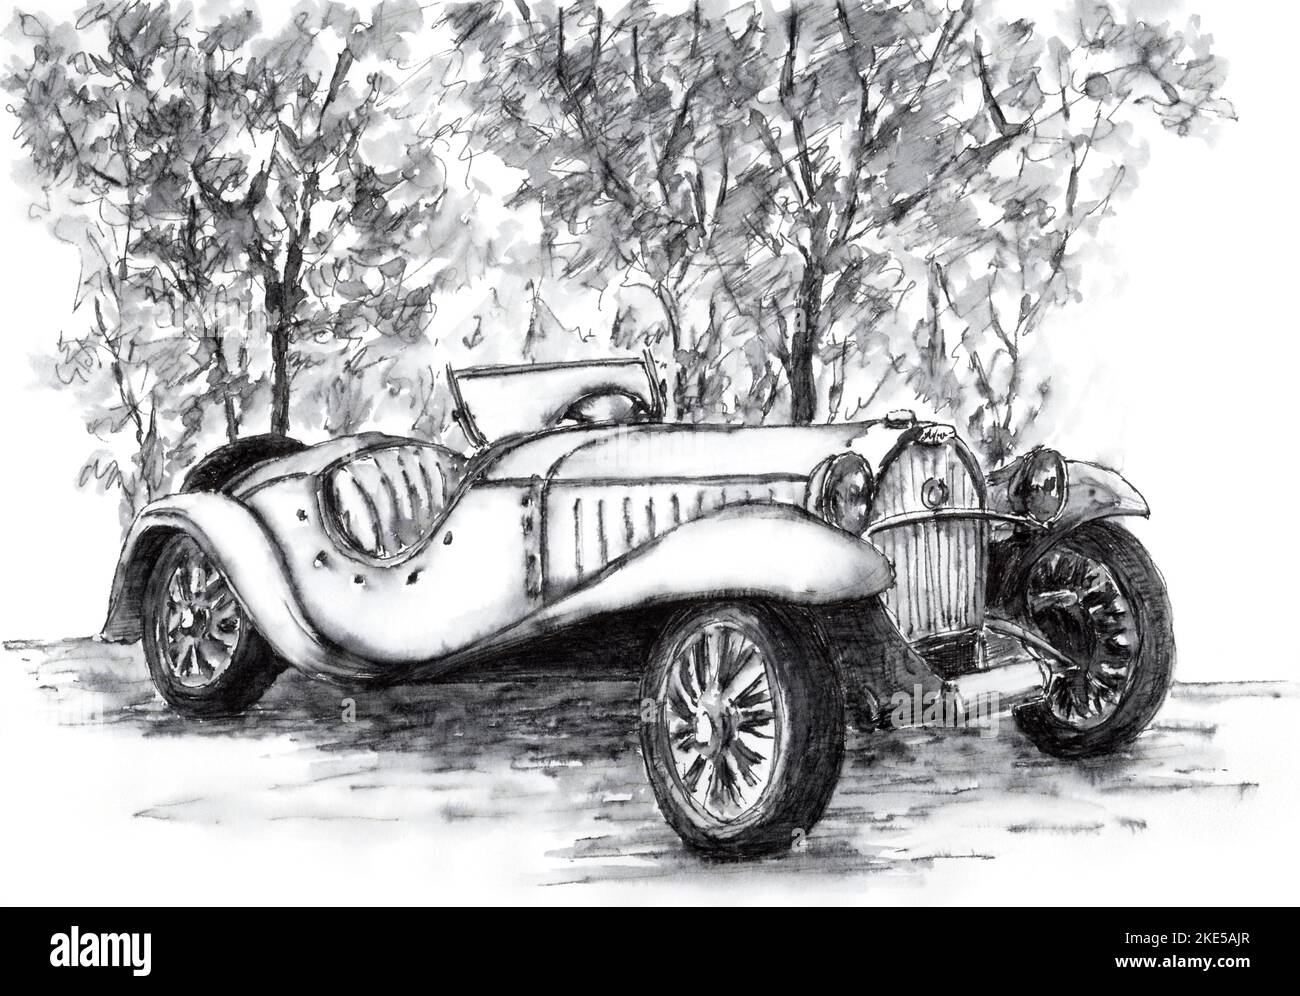 Dibujo a lápiz del carro viejo Imágenes recortadas de stock - Alamy